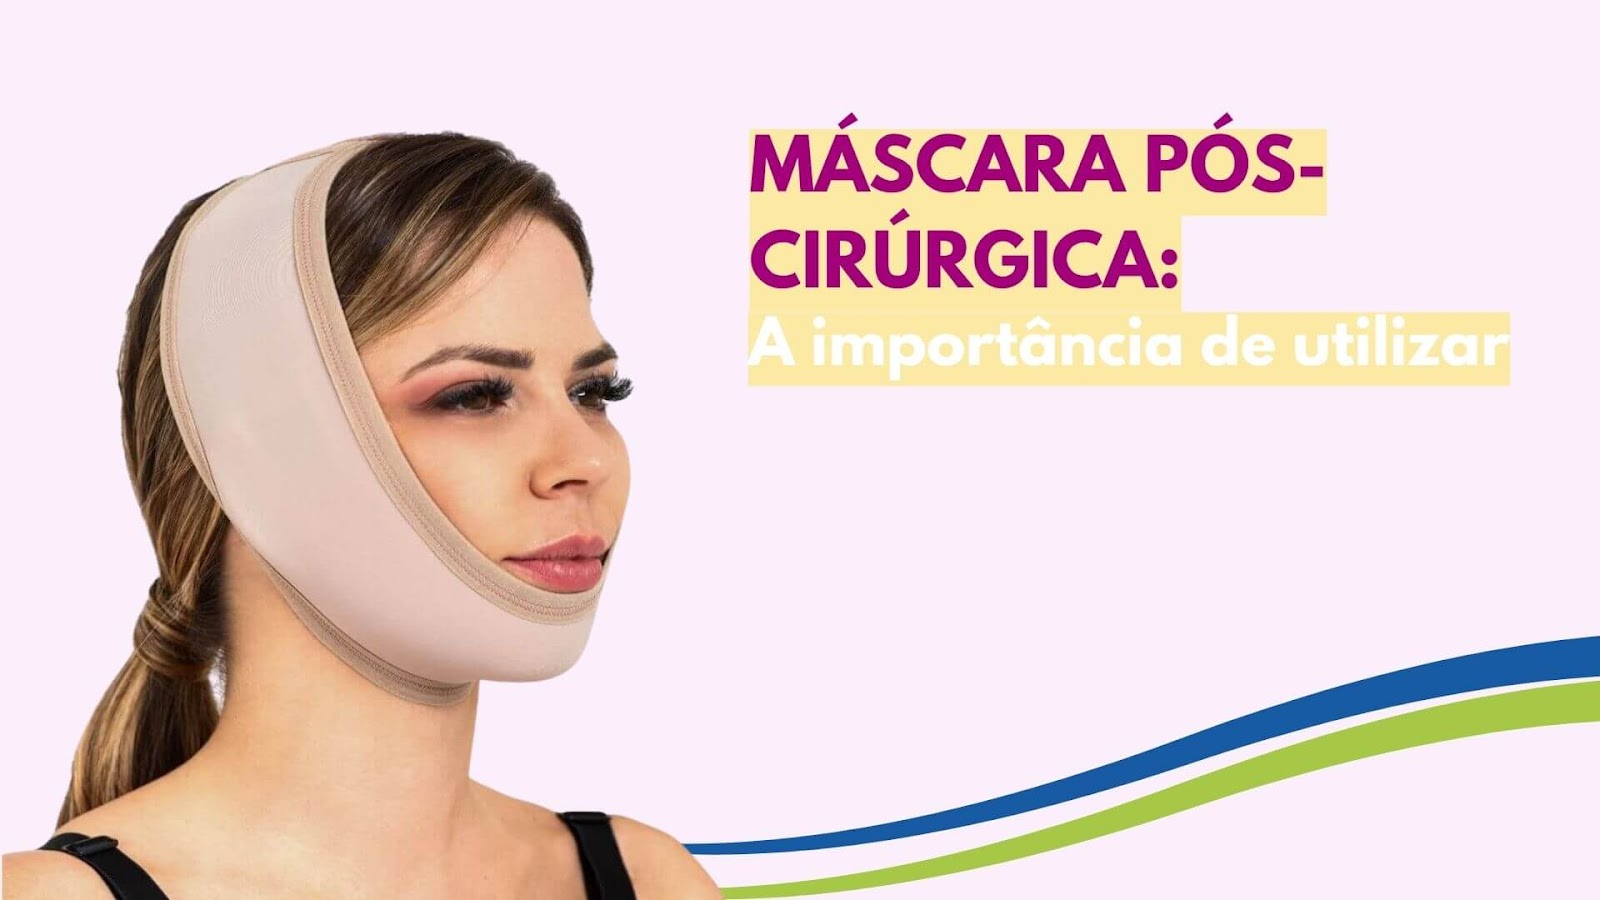 Máscara pós-cirúrgica: Por que usar?